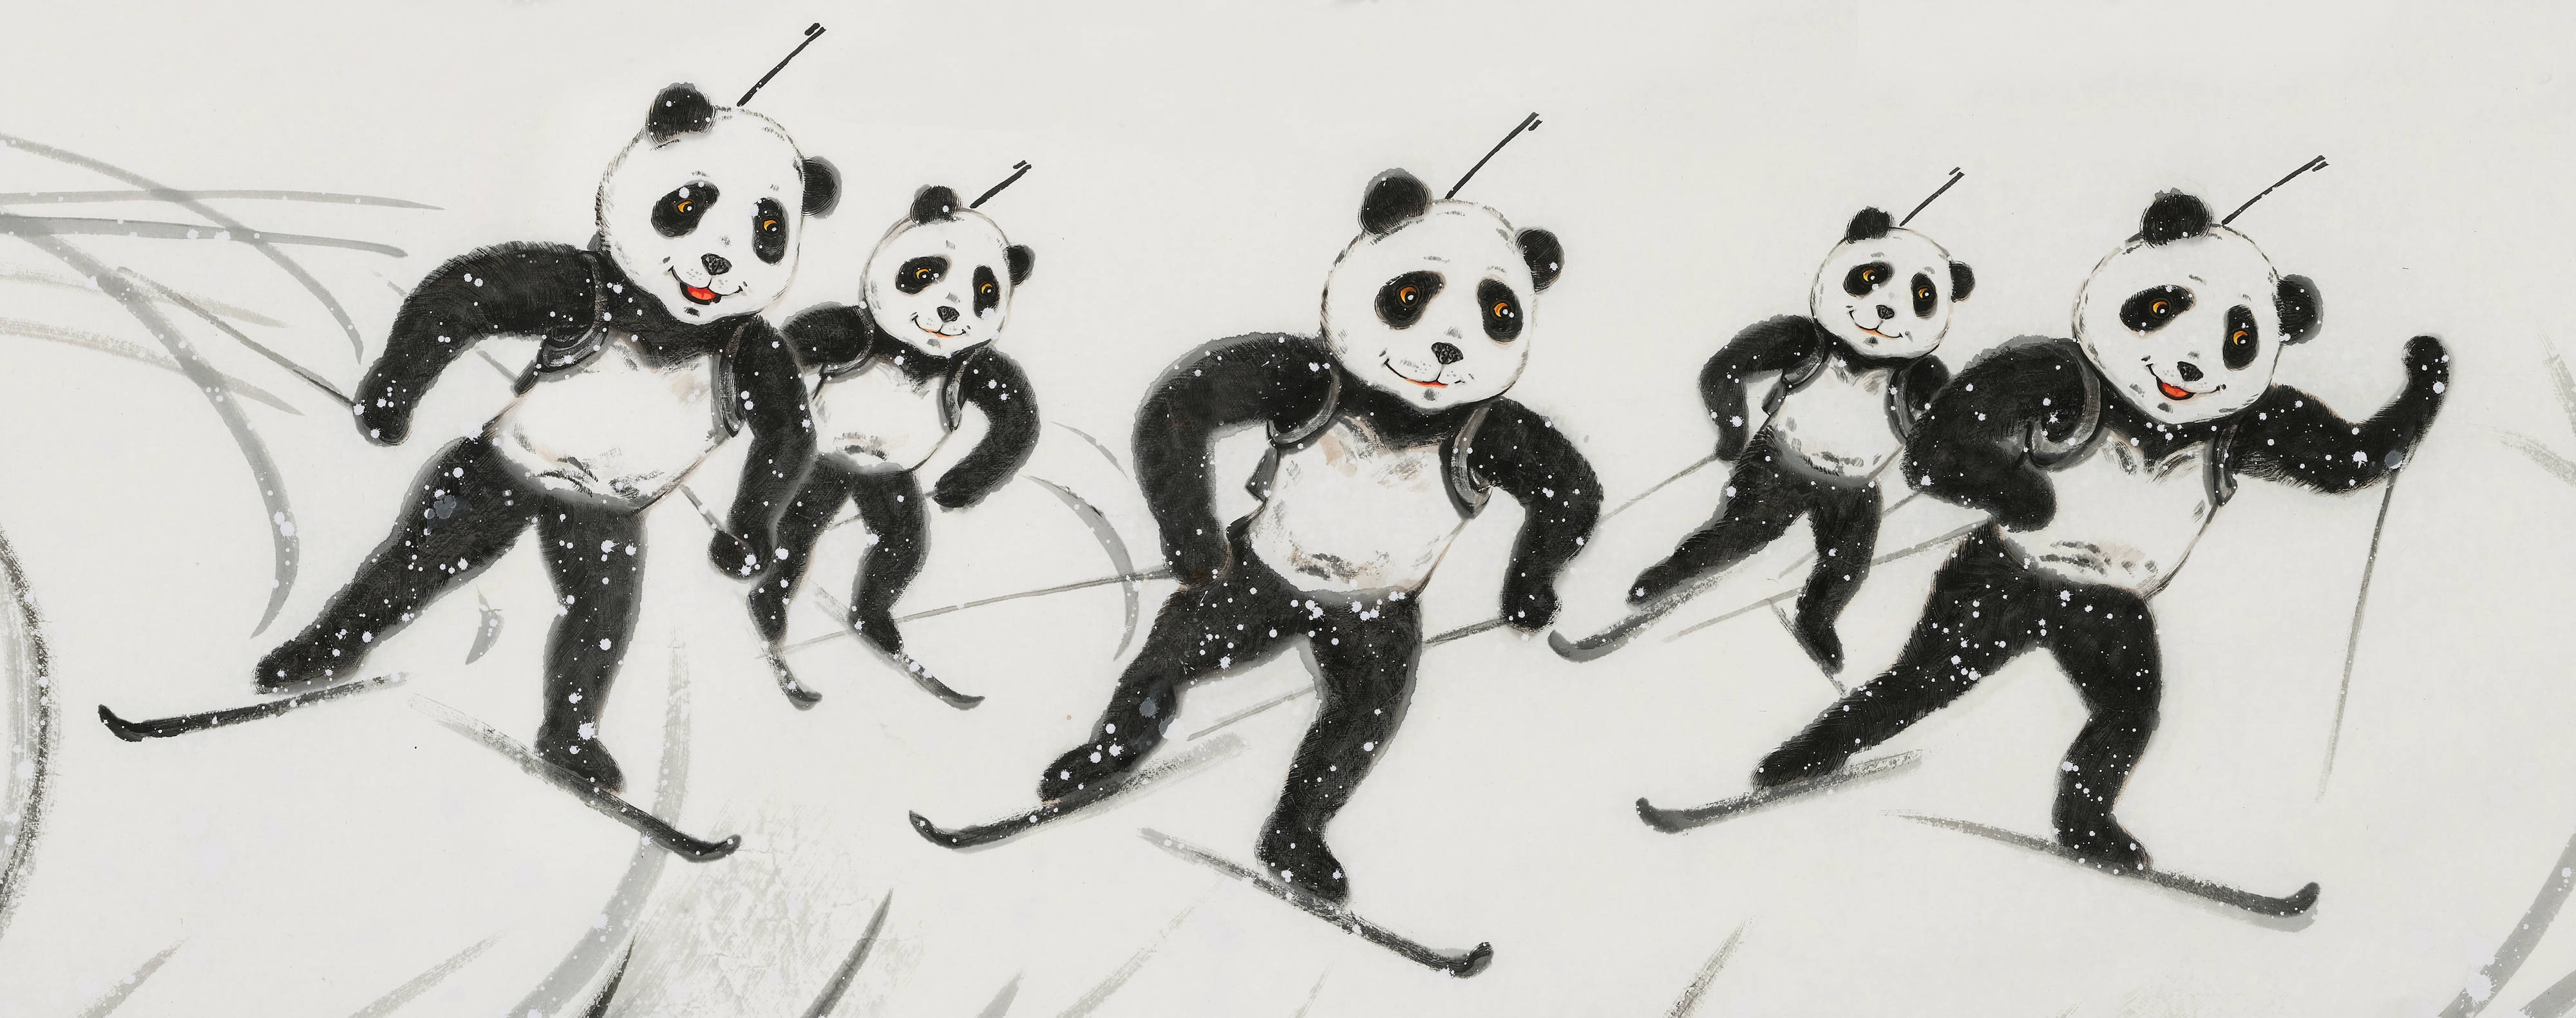 熊猫刘中绘百米长卷赞北京冬奥讲述刘中创作《冰雪国宝万里图》的故事